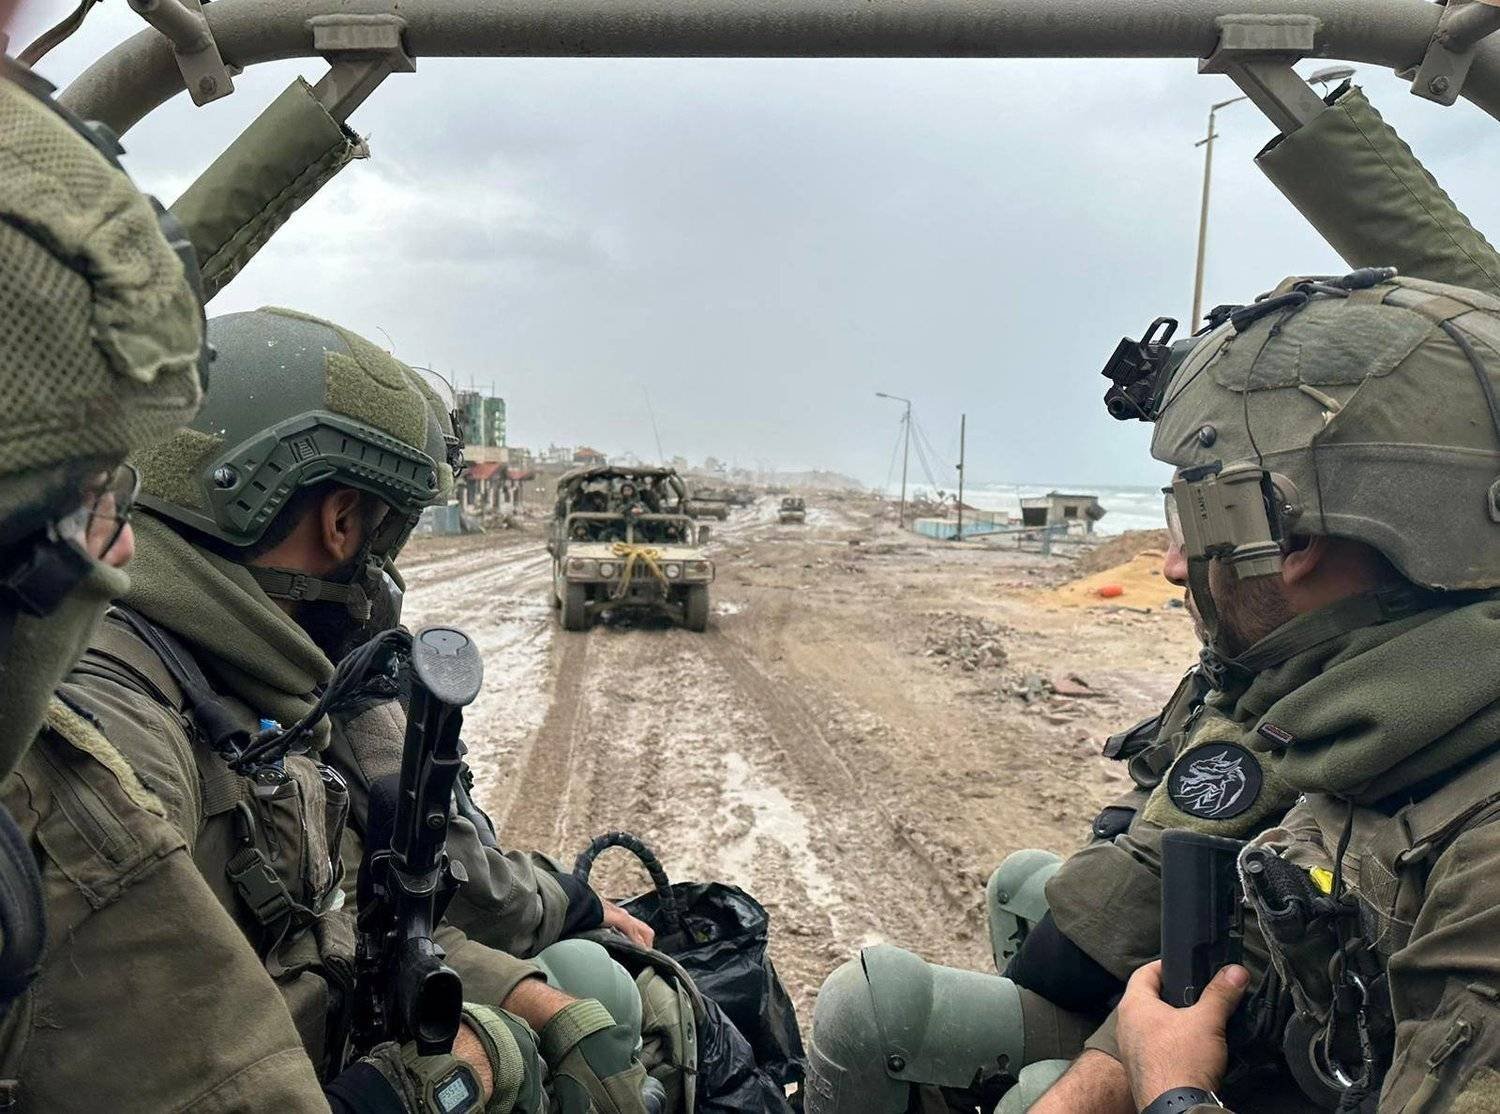 جنود إسرائيليون في قطاع غزة (رويترز)